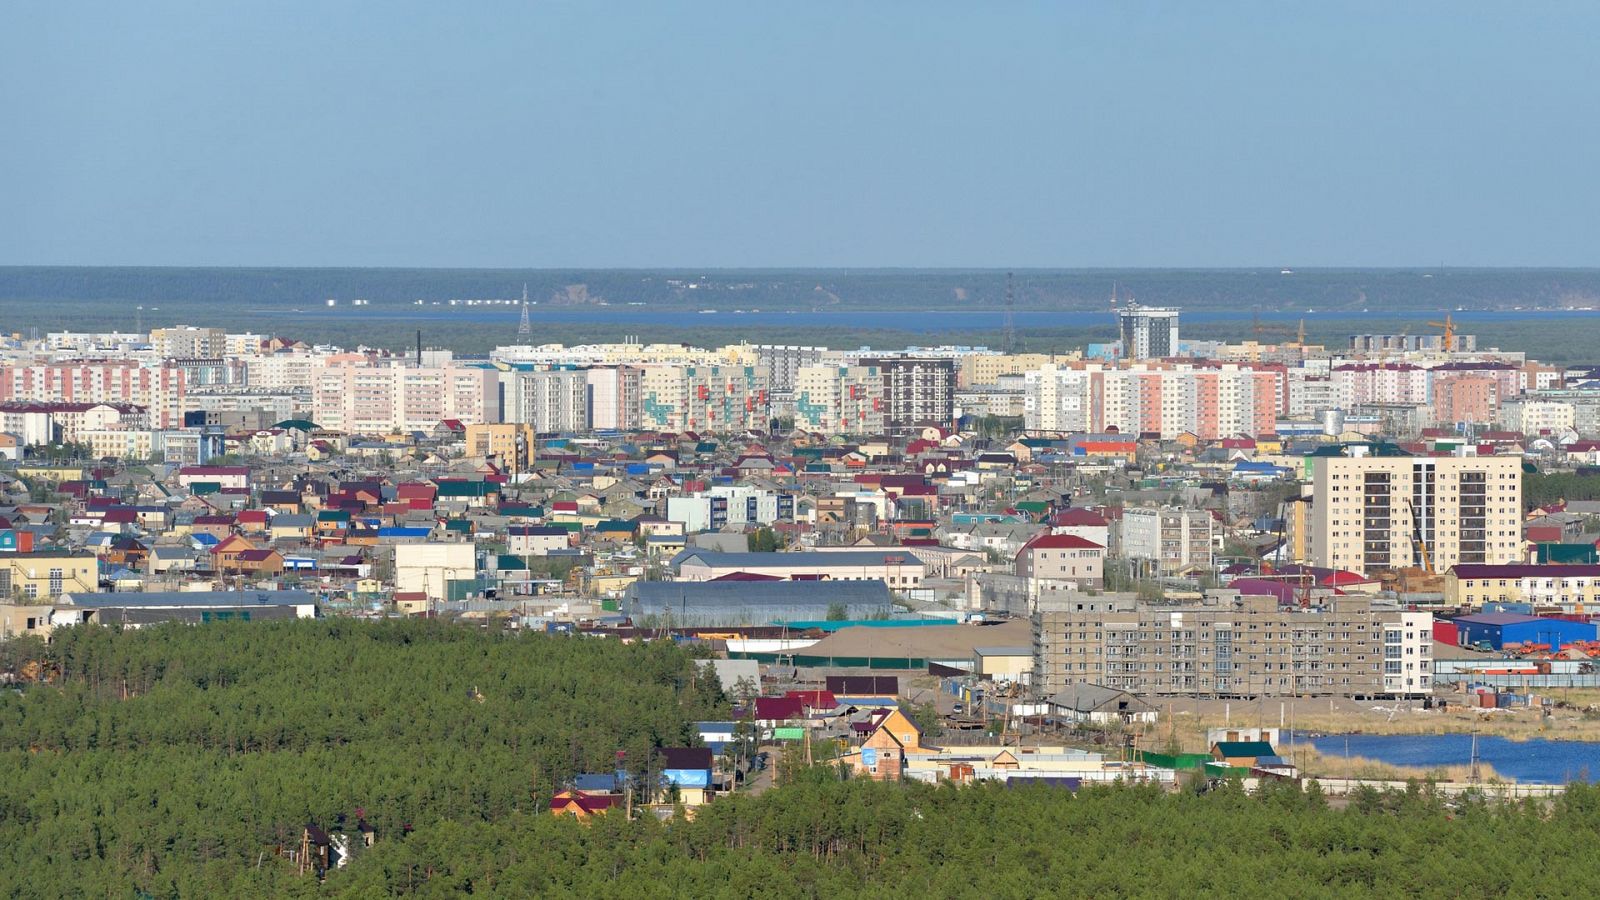 Bienvenidos a mi extraña ciudad - Episodio 3: Yakutsk - Documental en RTVE